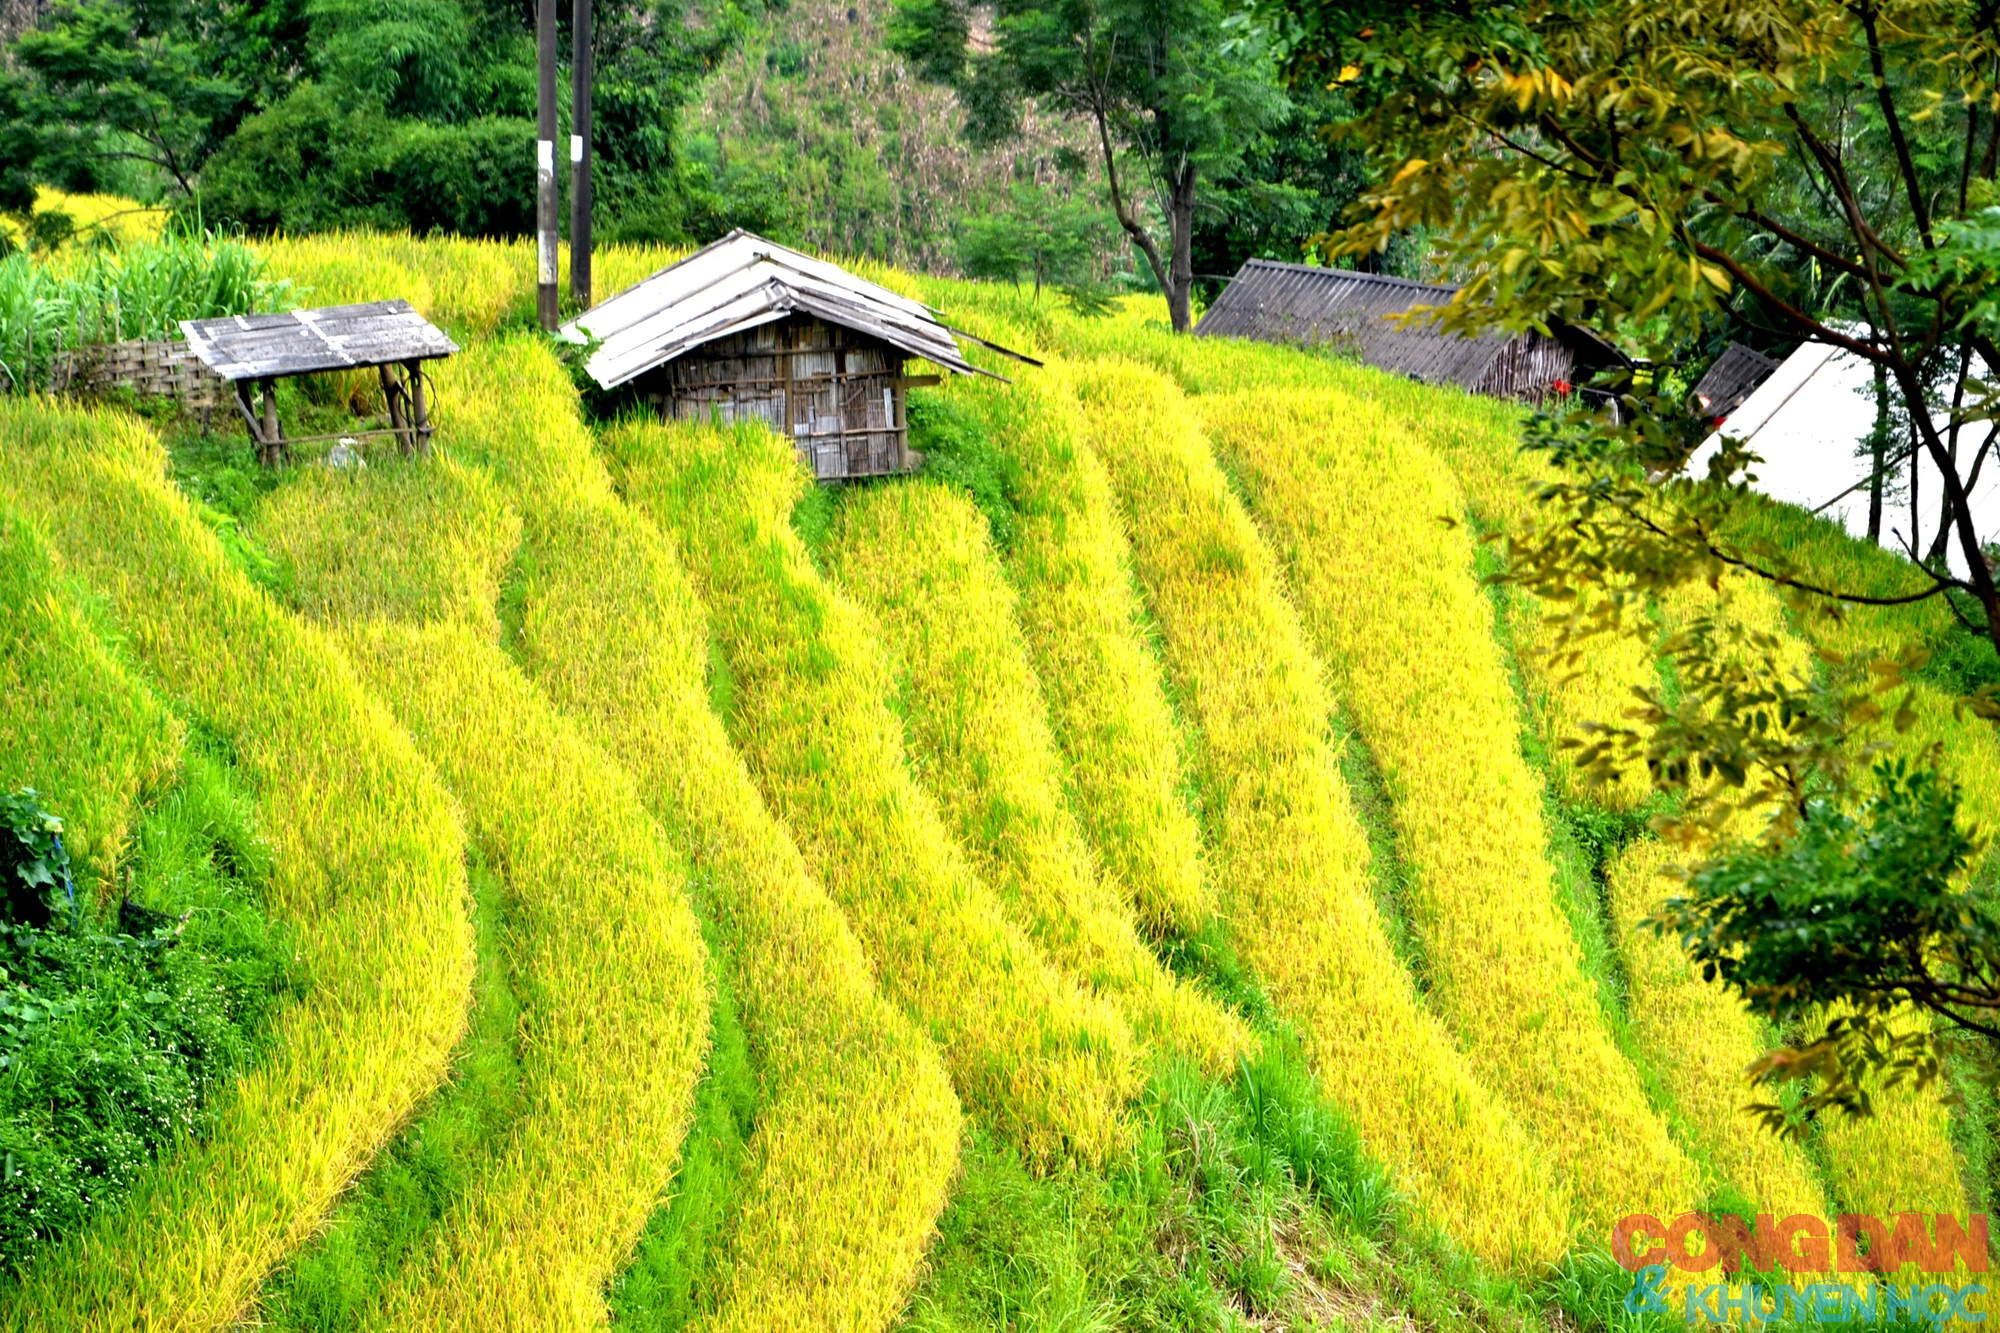 Mùa vàng đẹp mê trên núi cao Bát Xát, Lào Cai - Ảnh 10.